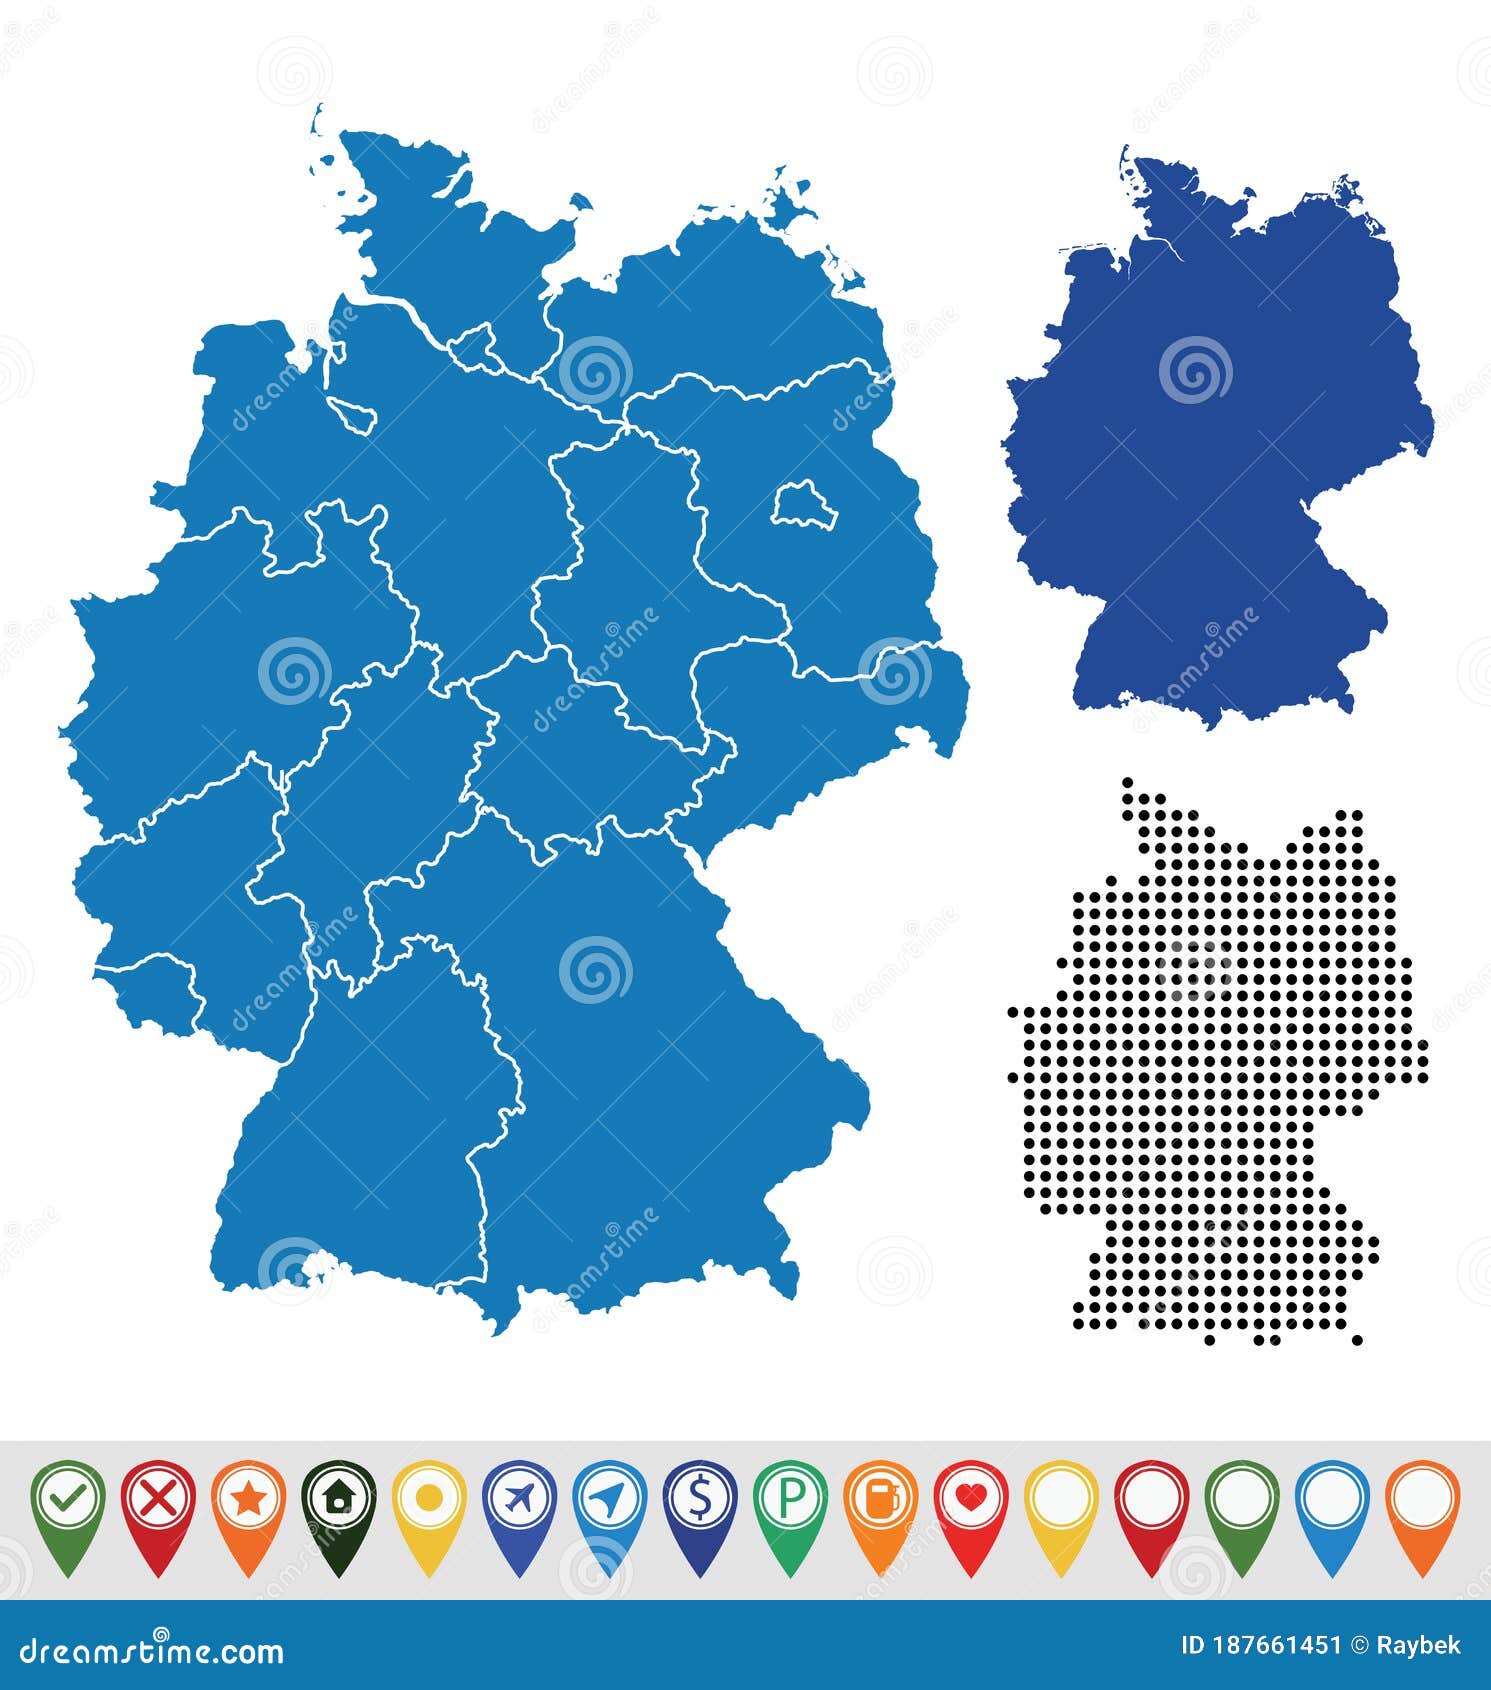 德国地形图 - 德国地图 - 地理教师网